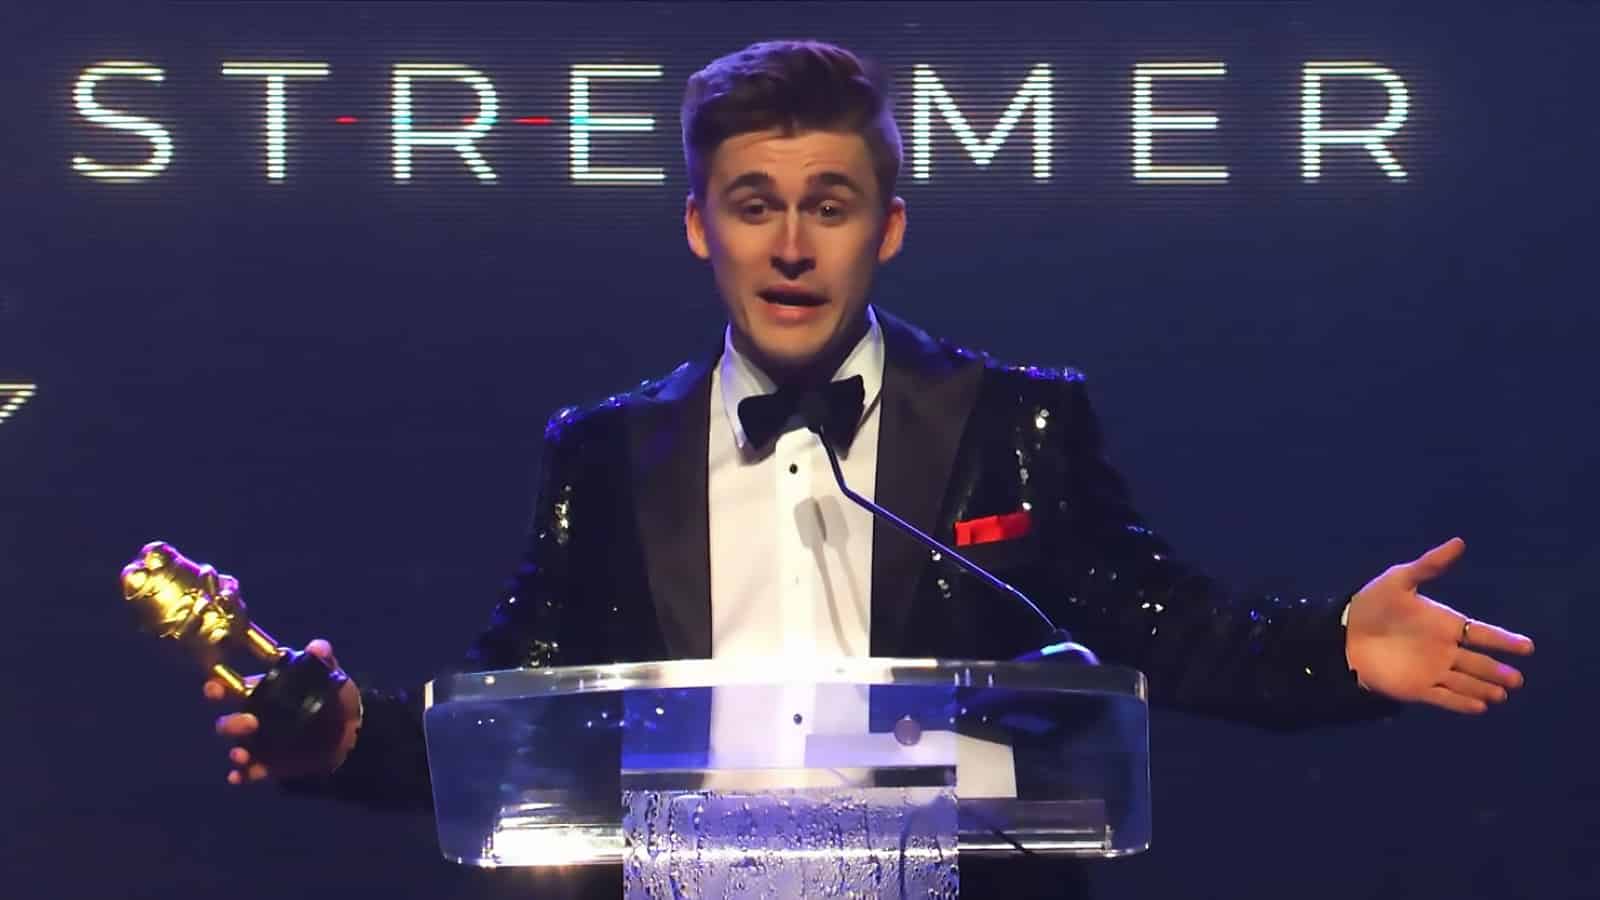 YouTuber Ludwig accepts award at the Streamer Awards screenshot.